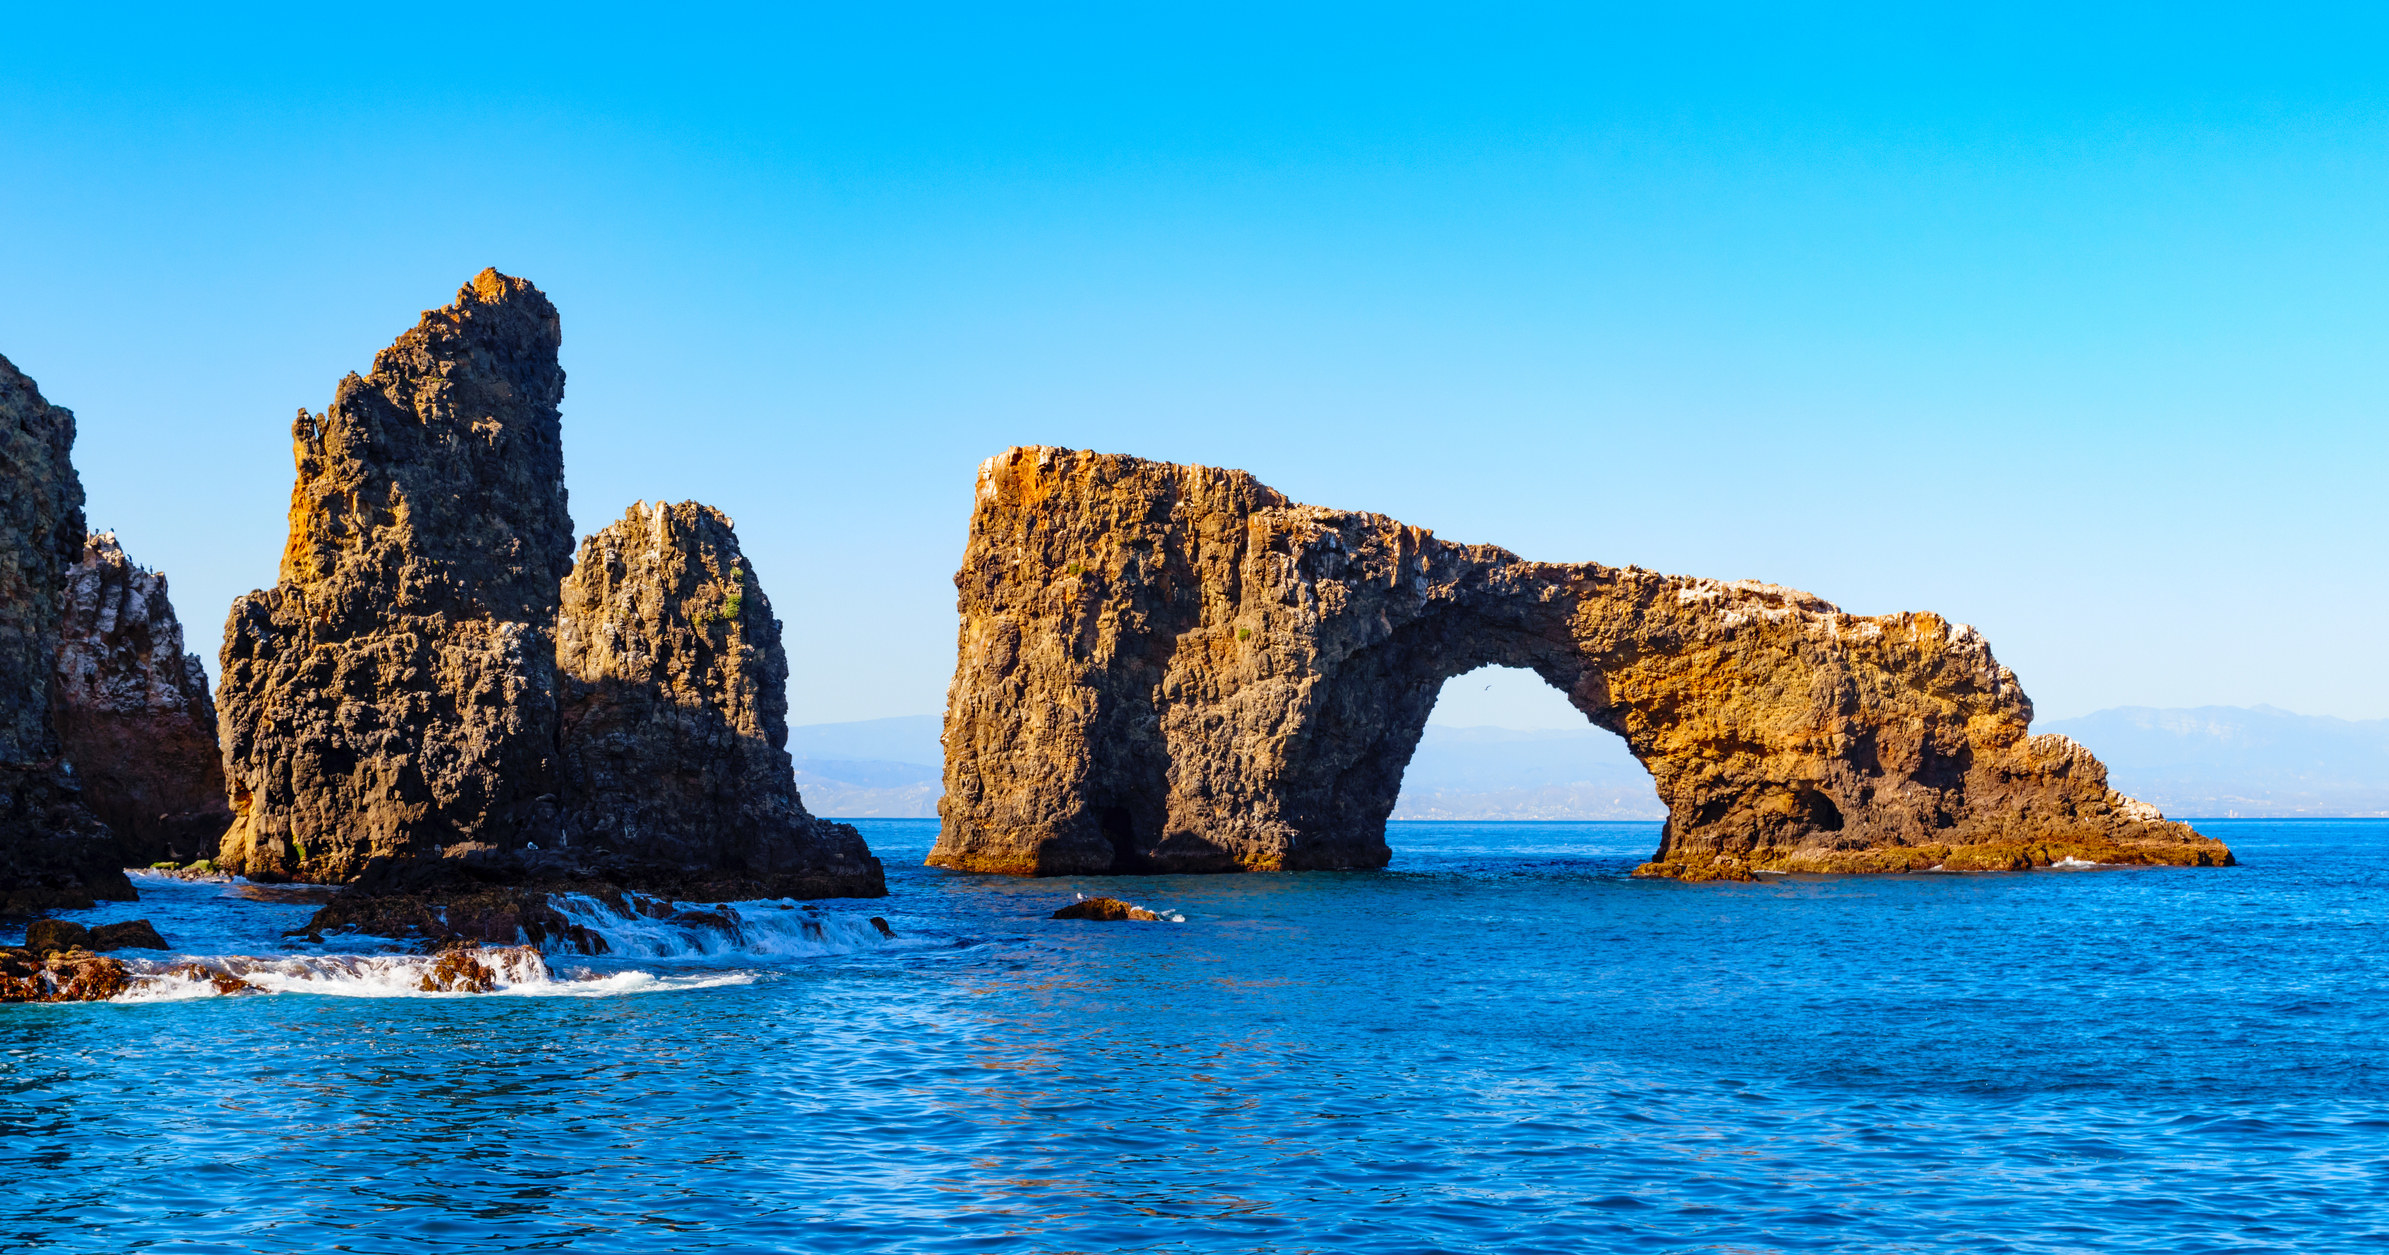 拱形岩石自然桥的照片和拱岩层Anacapa岛附近的海峡群岛国家公园的一部分,在加州的洛杉矶,美国。